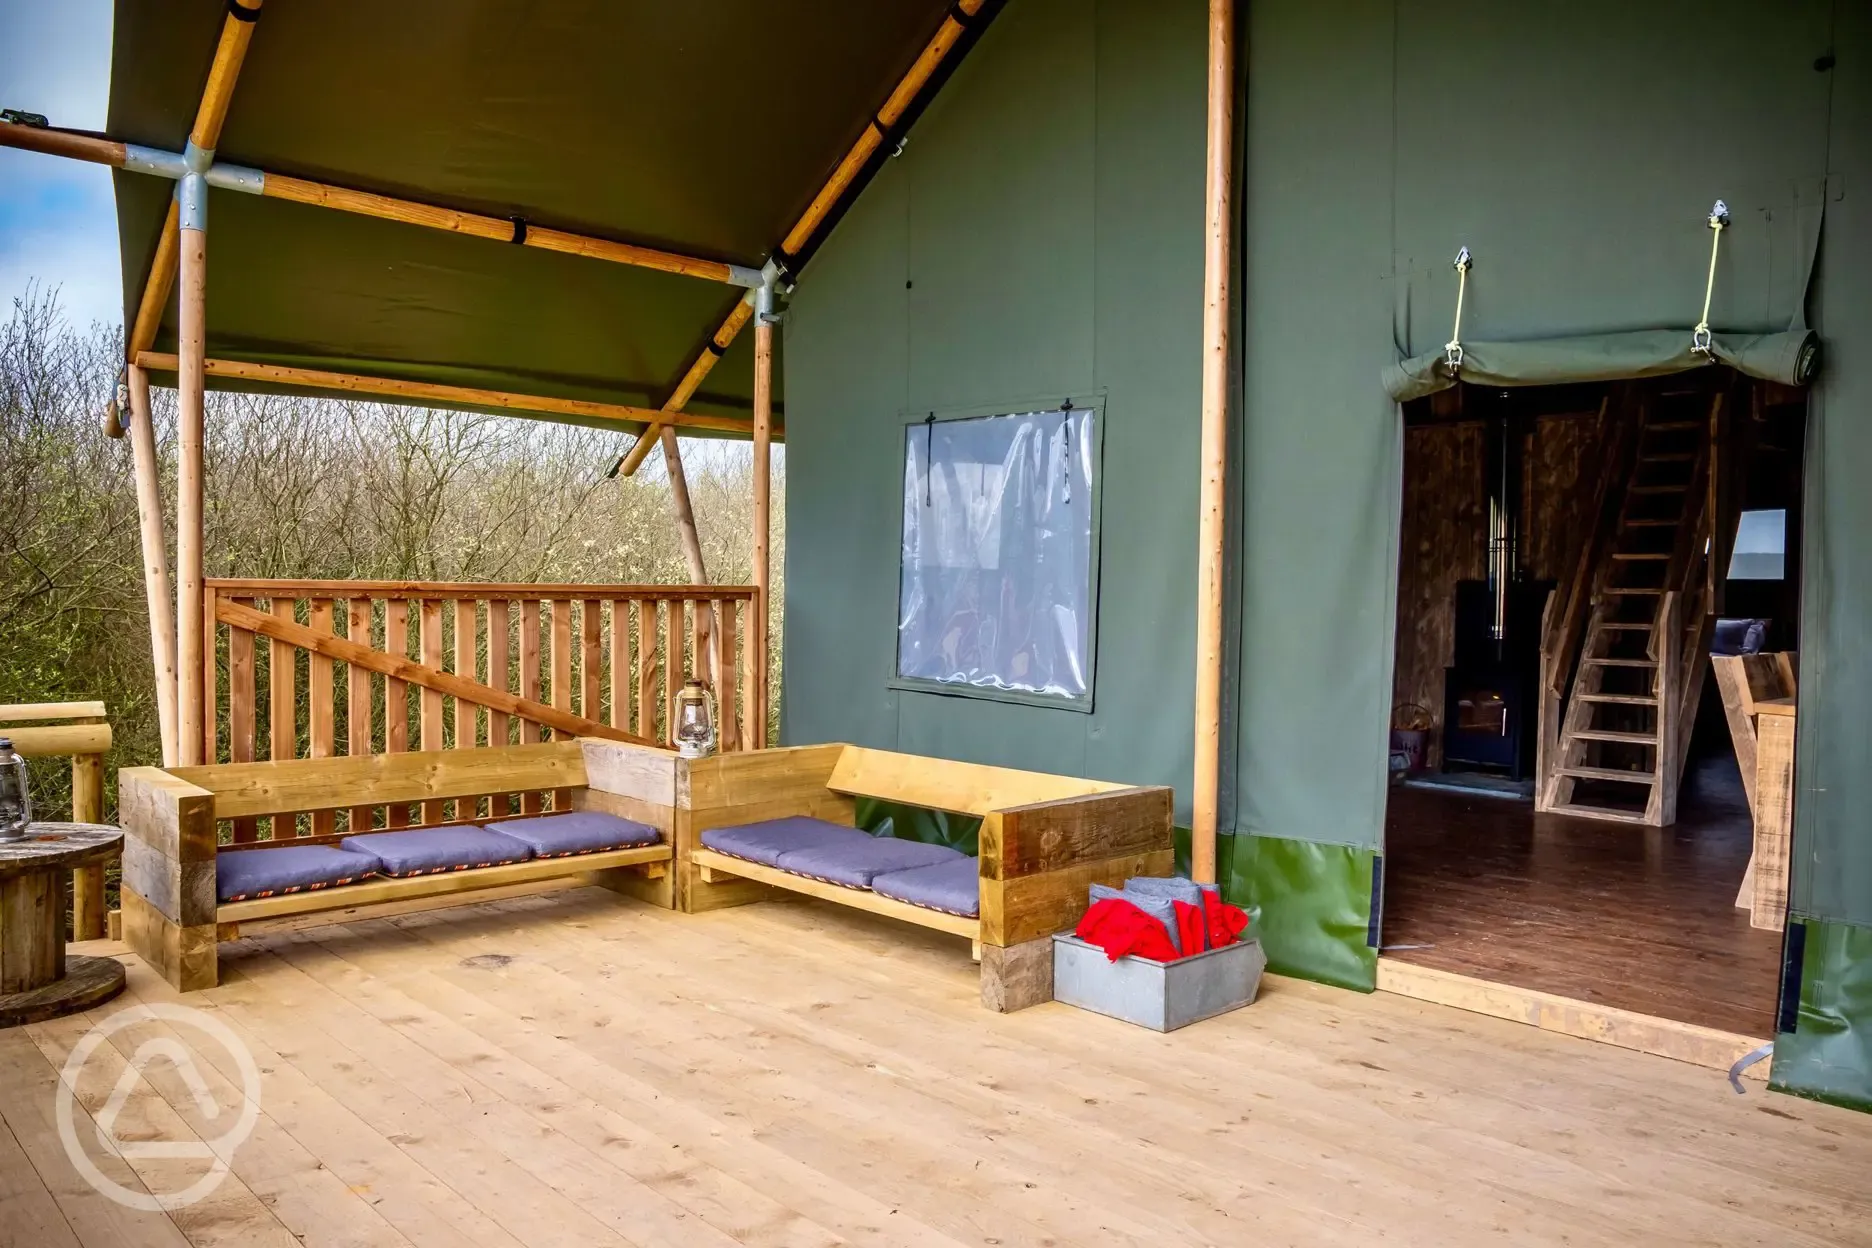 Safari lodge decking area